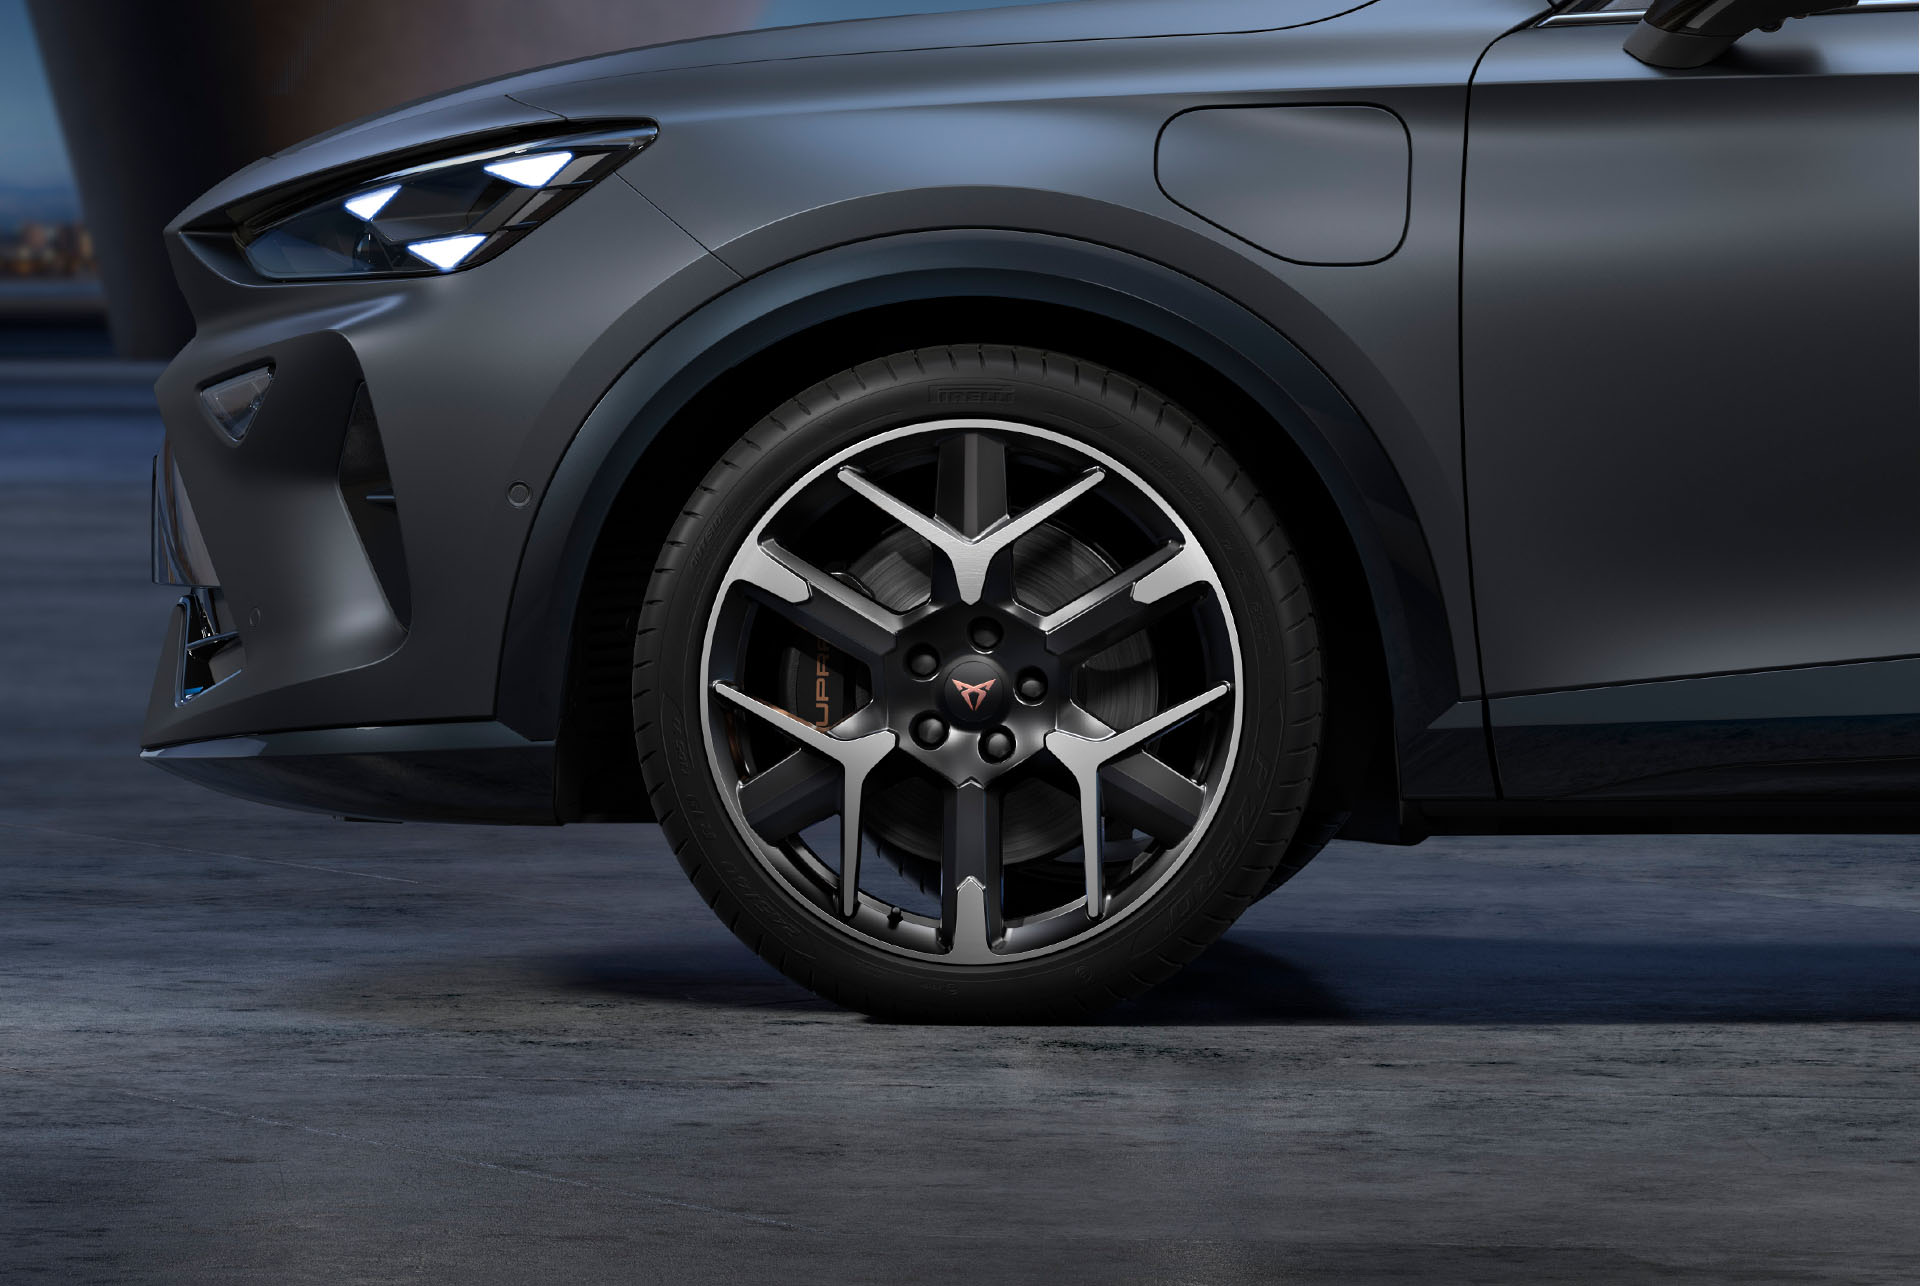 Vordere Seitenansicht der schwarz-silbernen Schmiedefelgen links, Reifen und typische Scheinwerferform.